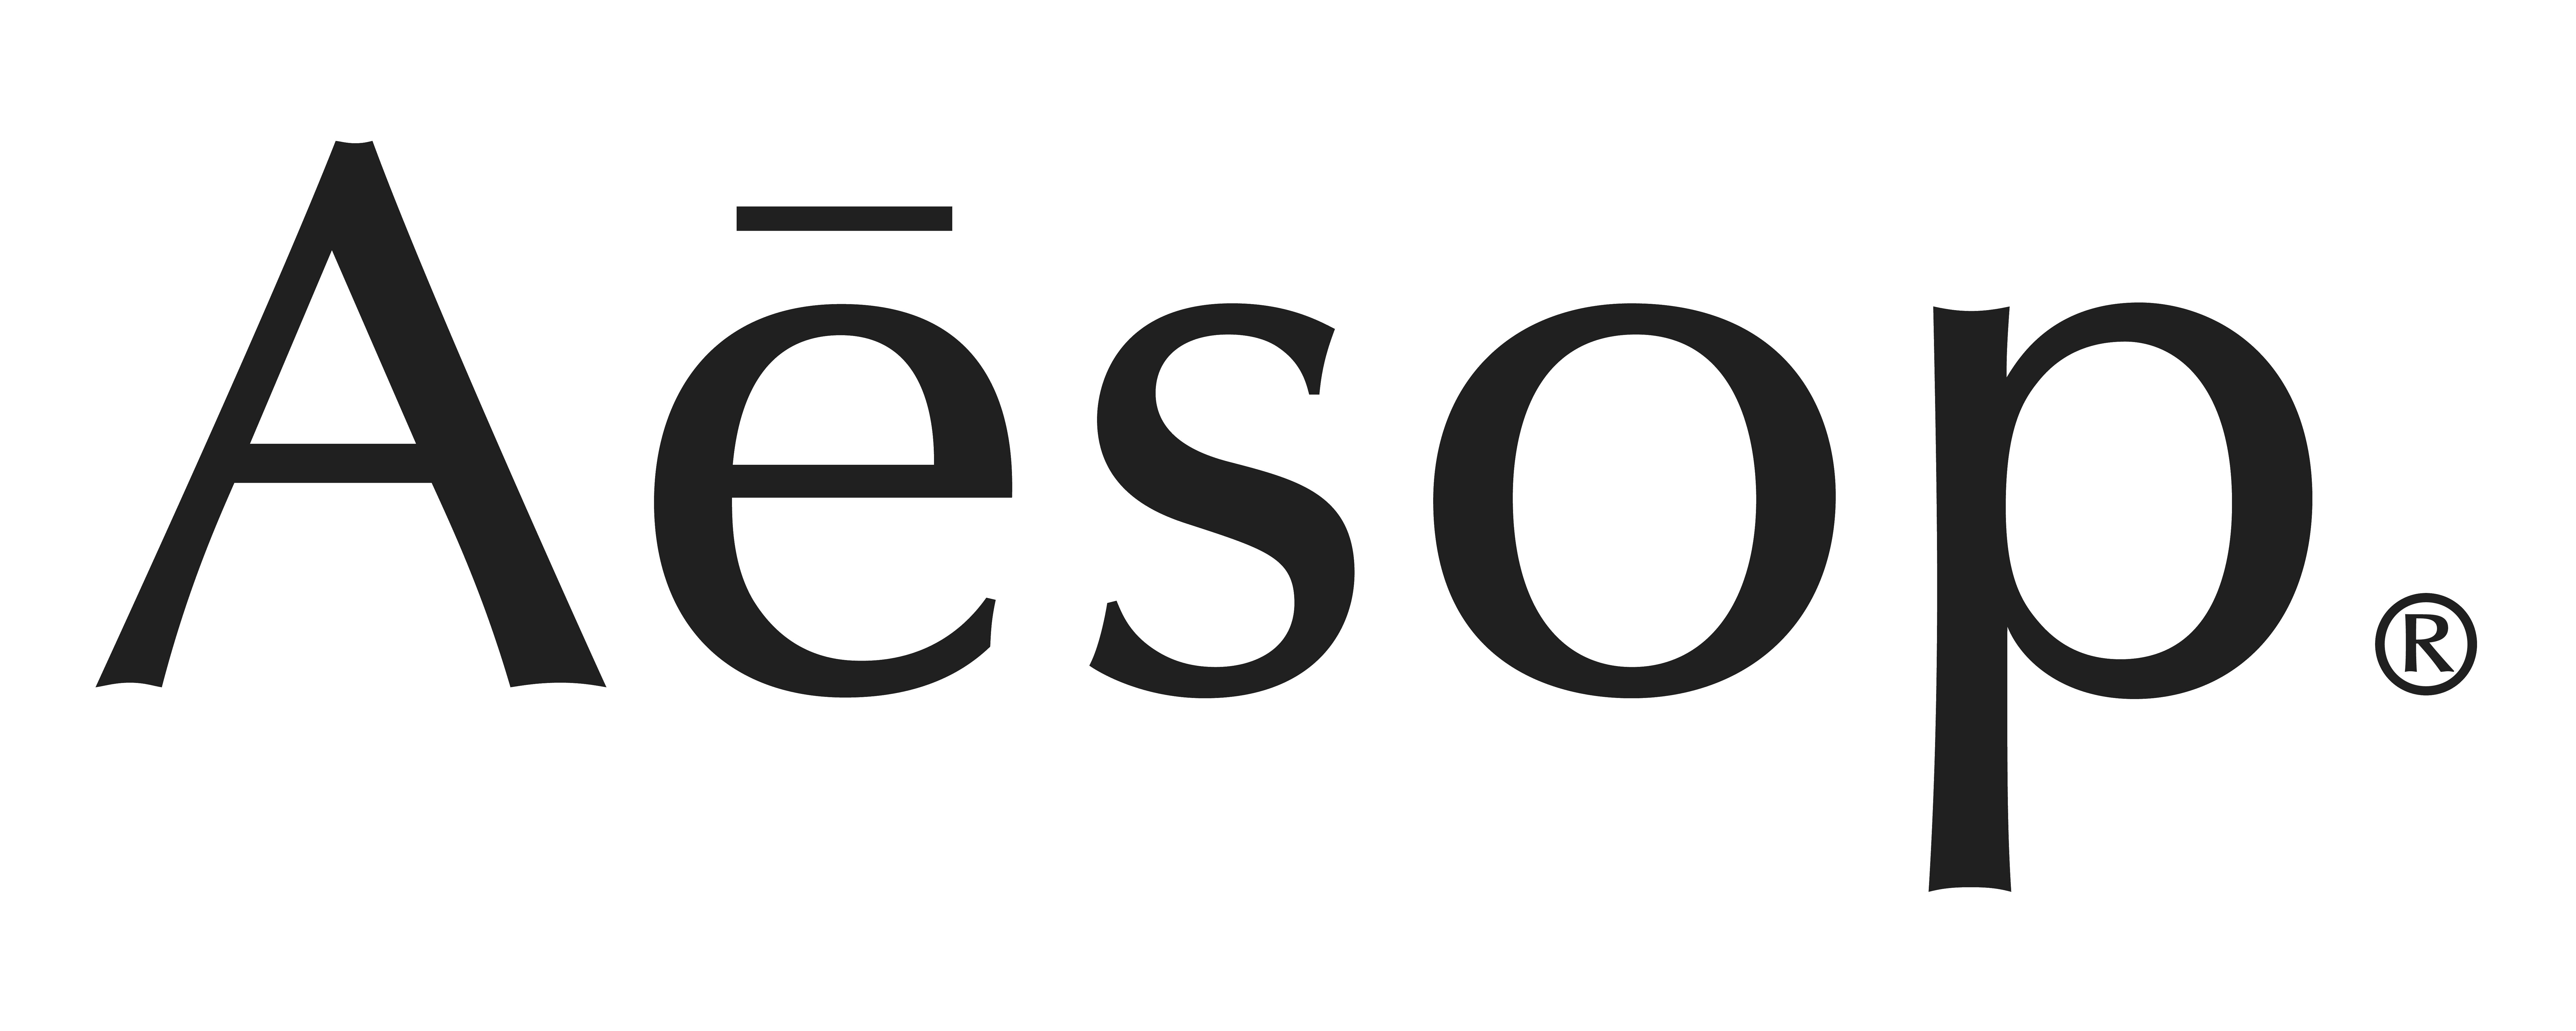 Mẫu thiết kế của logo thương hiệu AESOP